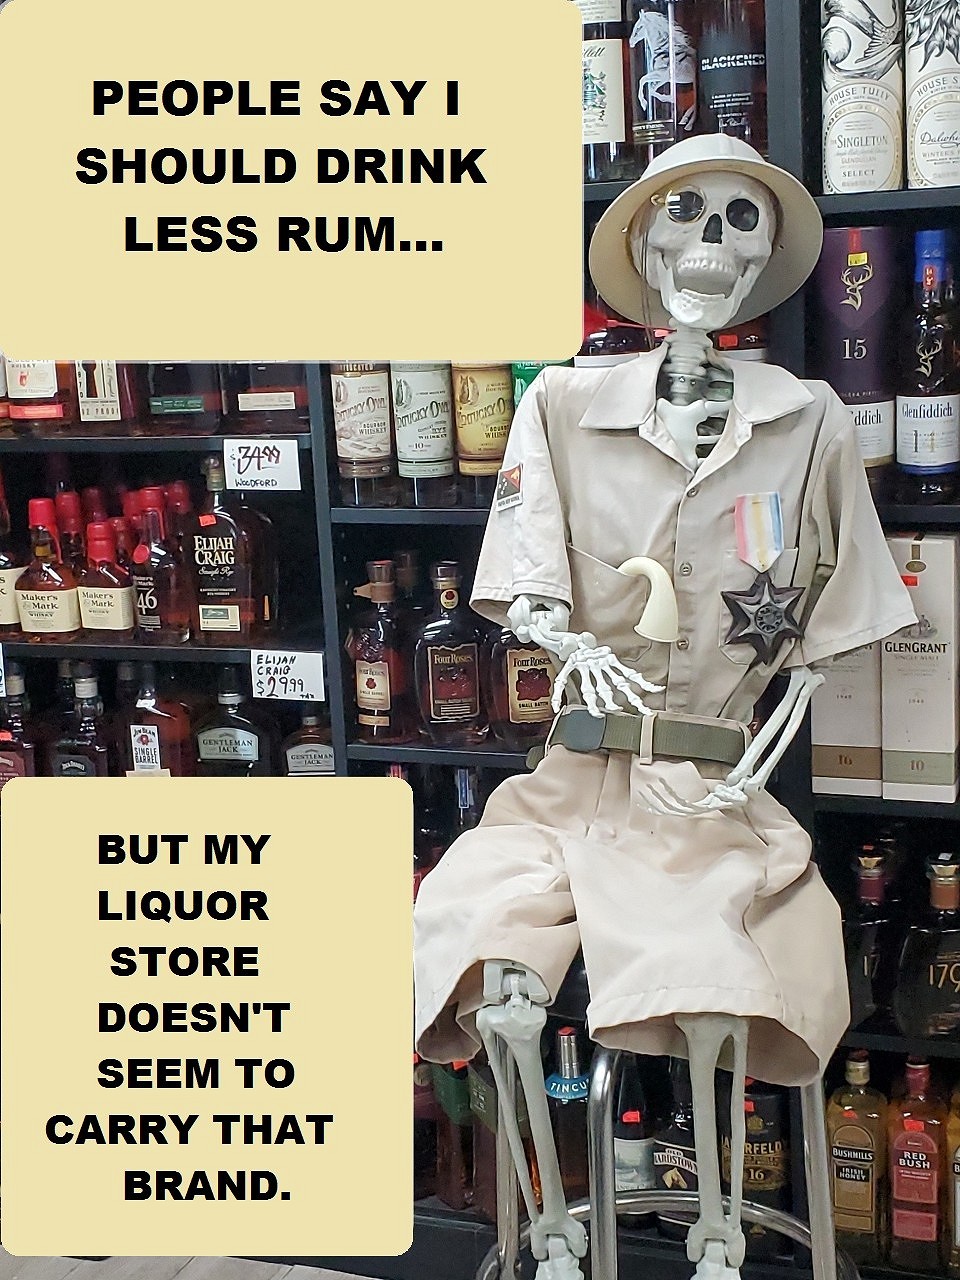 Less Rum